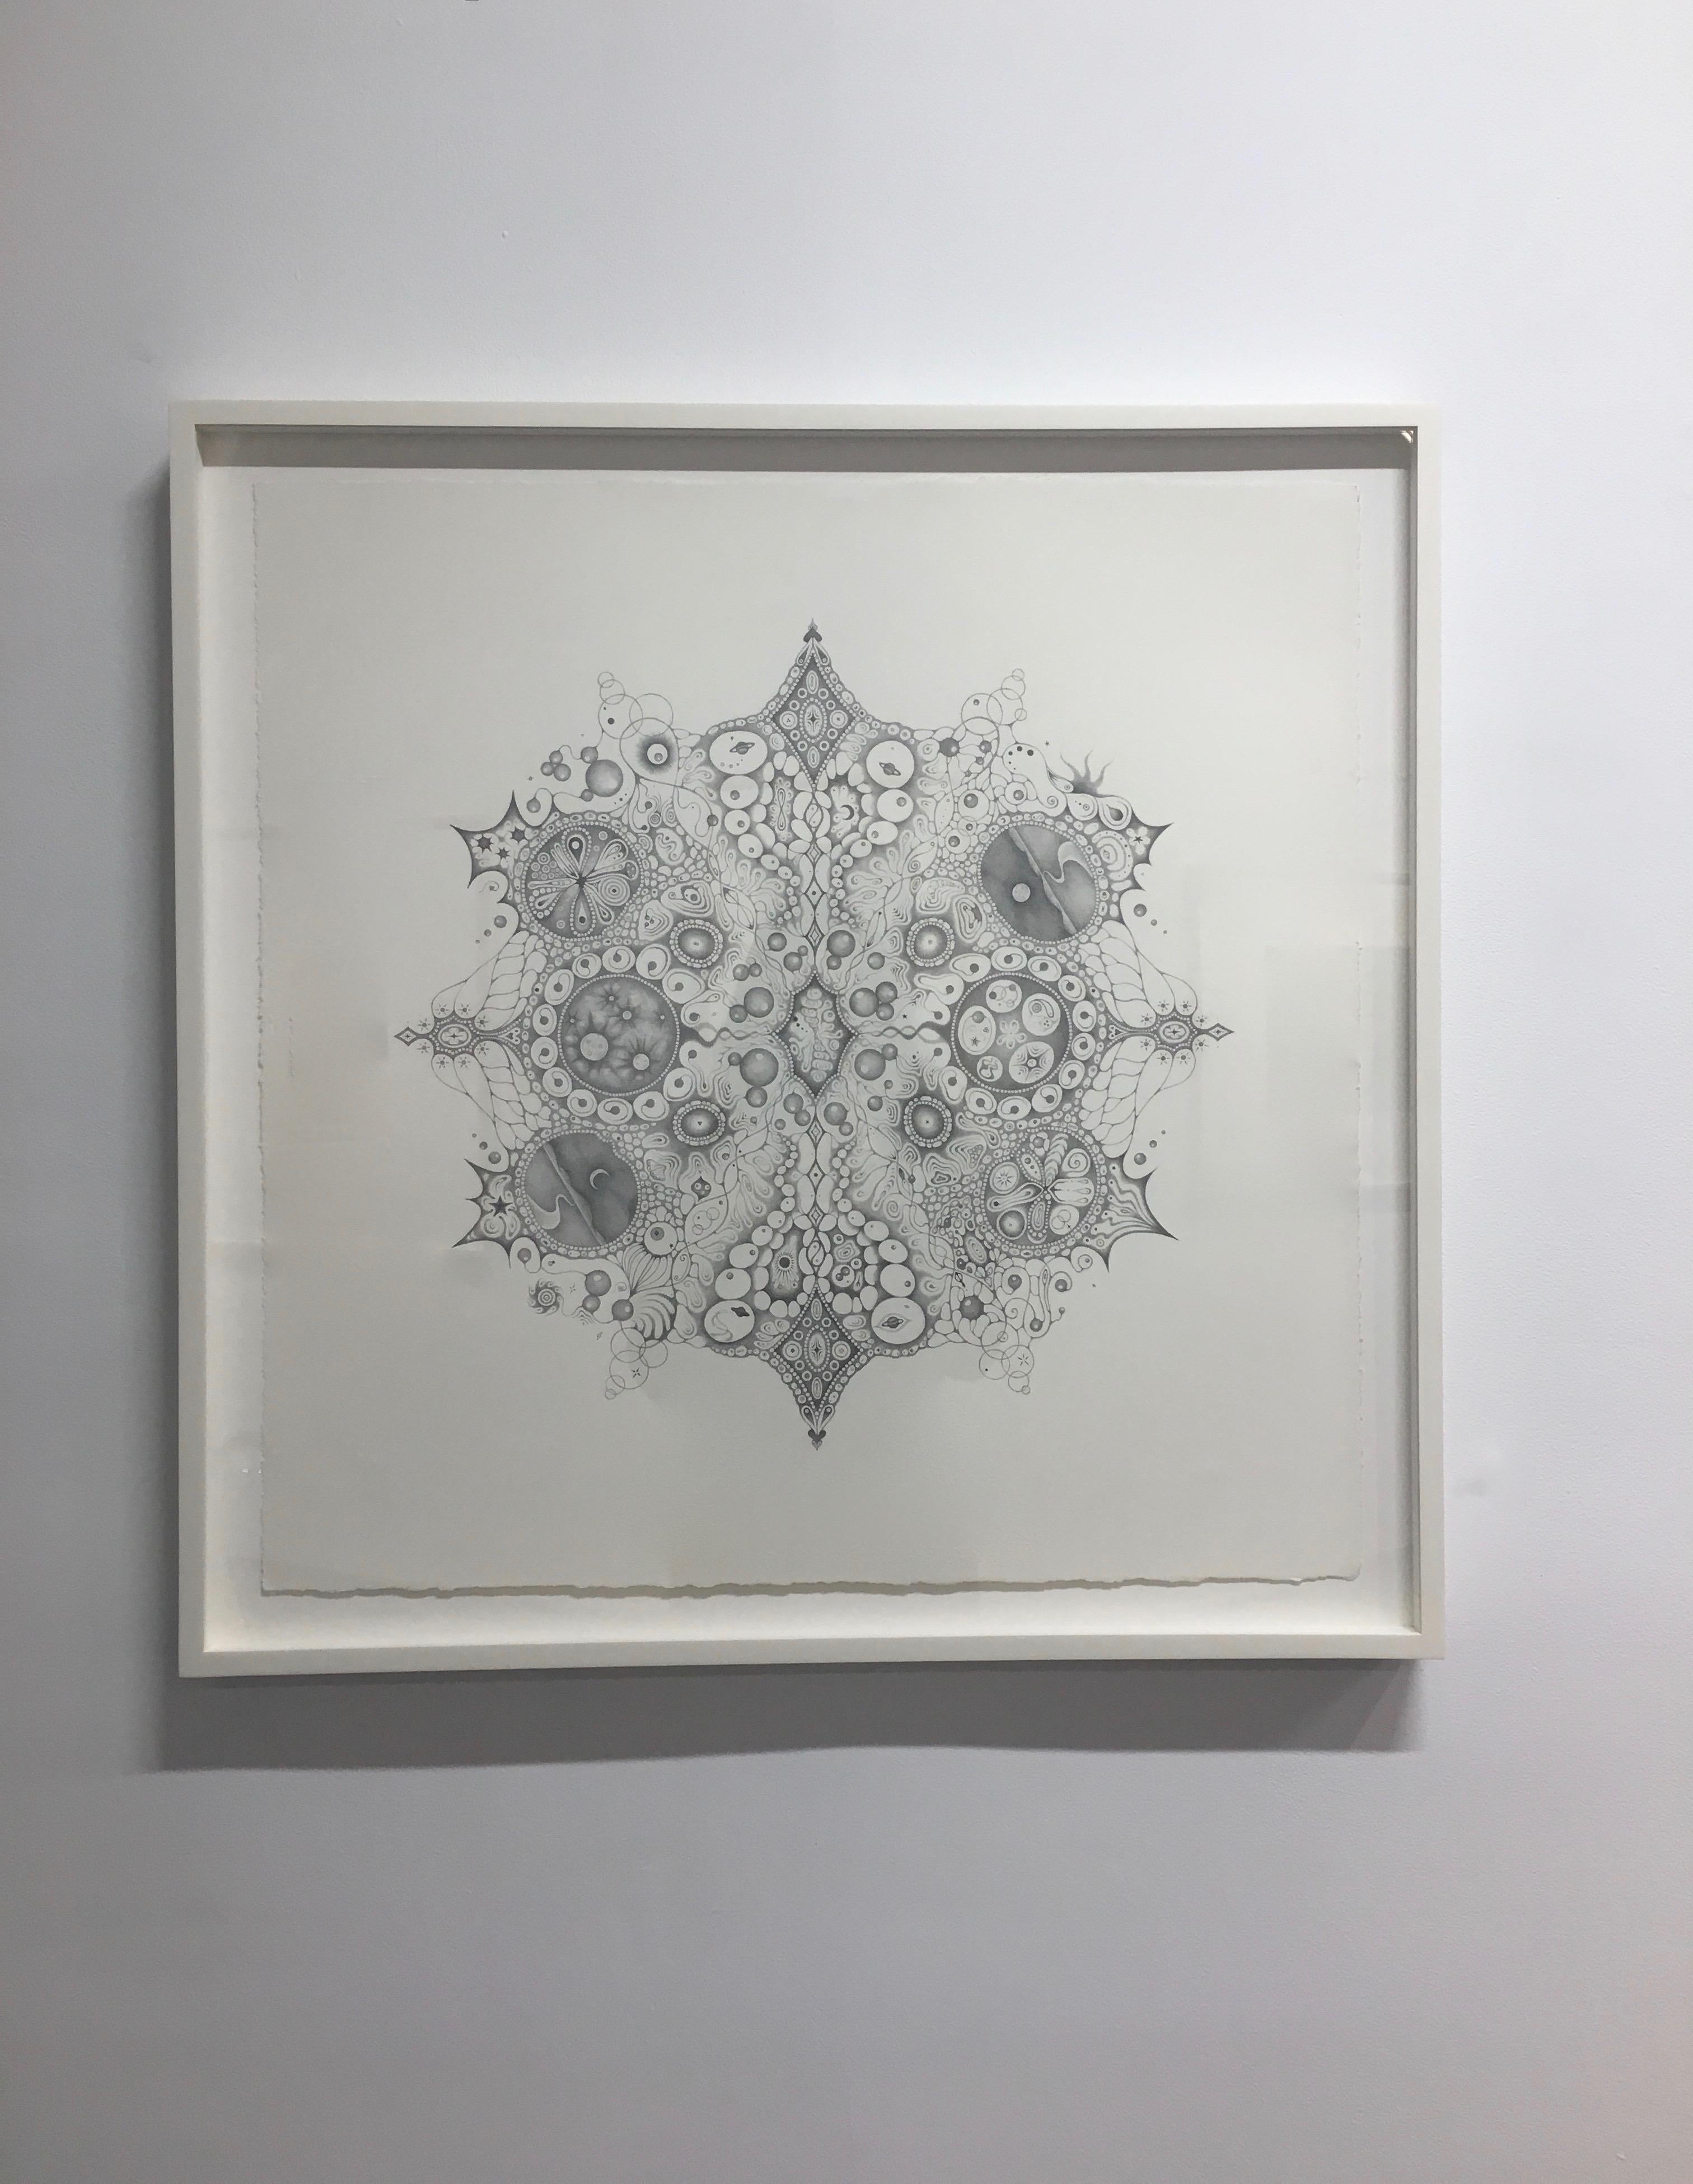 Snowflakes 125 Oneness, Planets, Crescent Moon, Patterns Mandala Pencil Drawing - Art by Michiyo Ihara